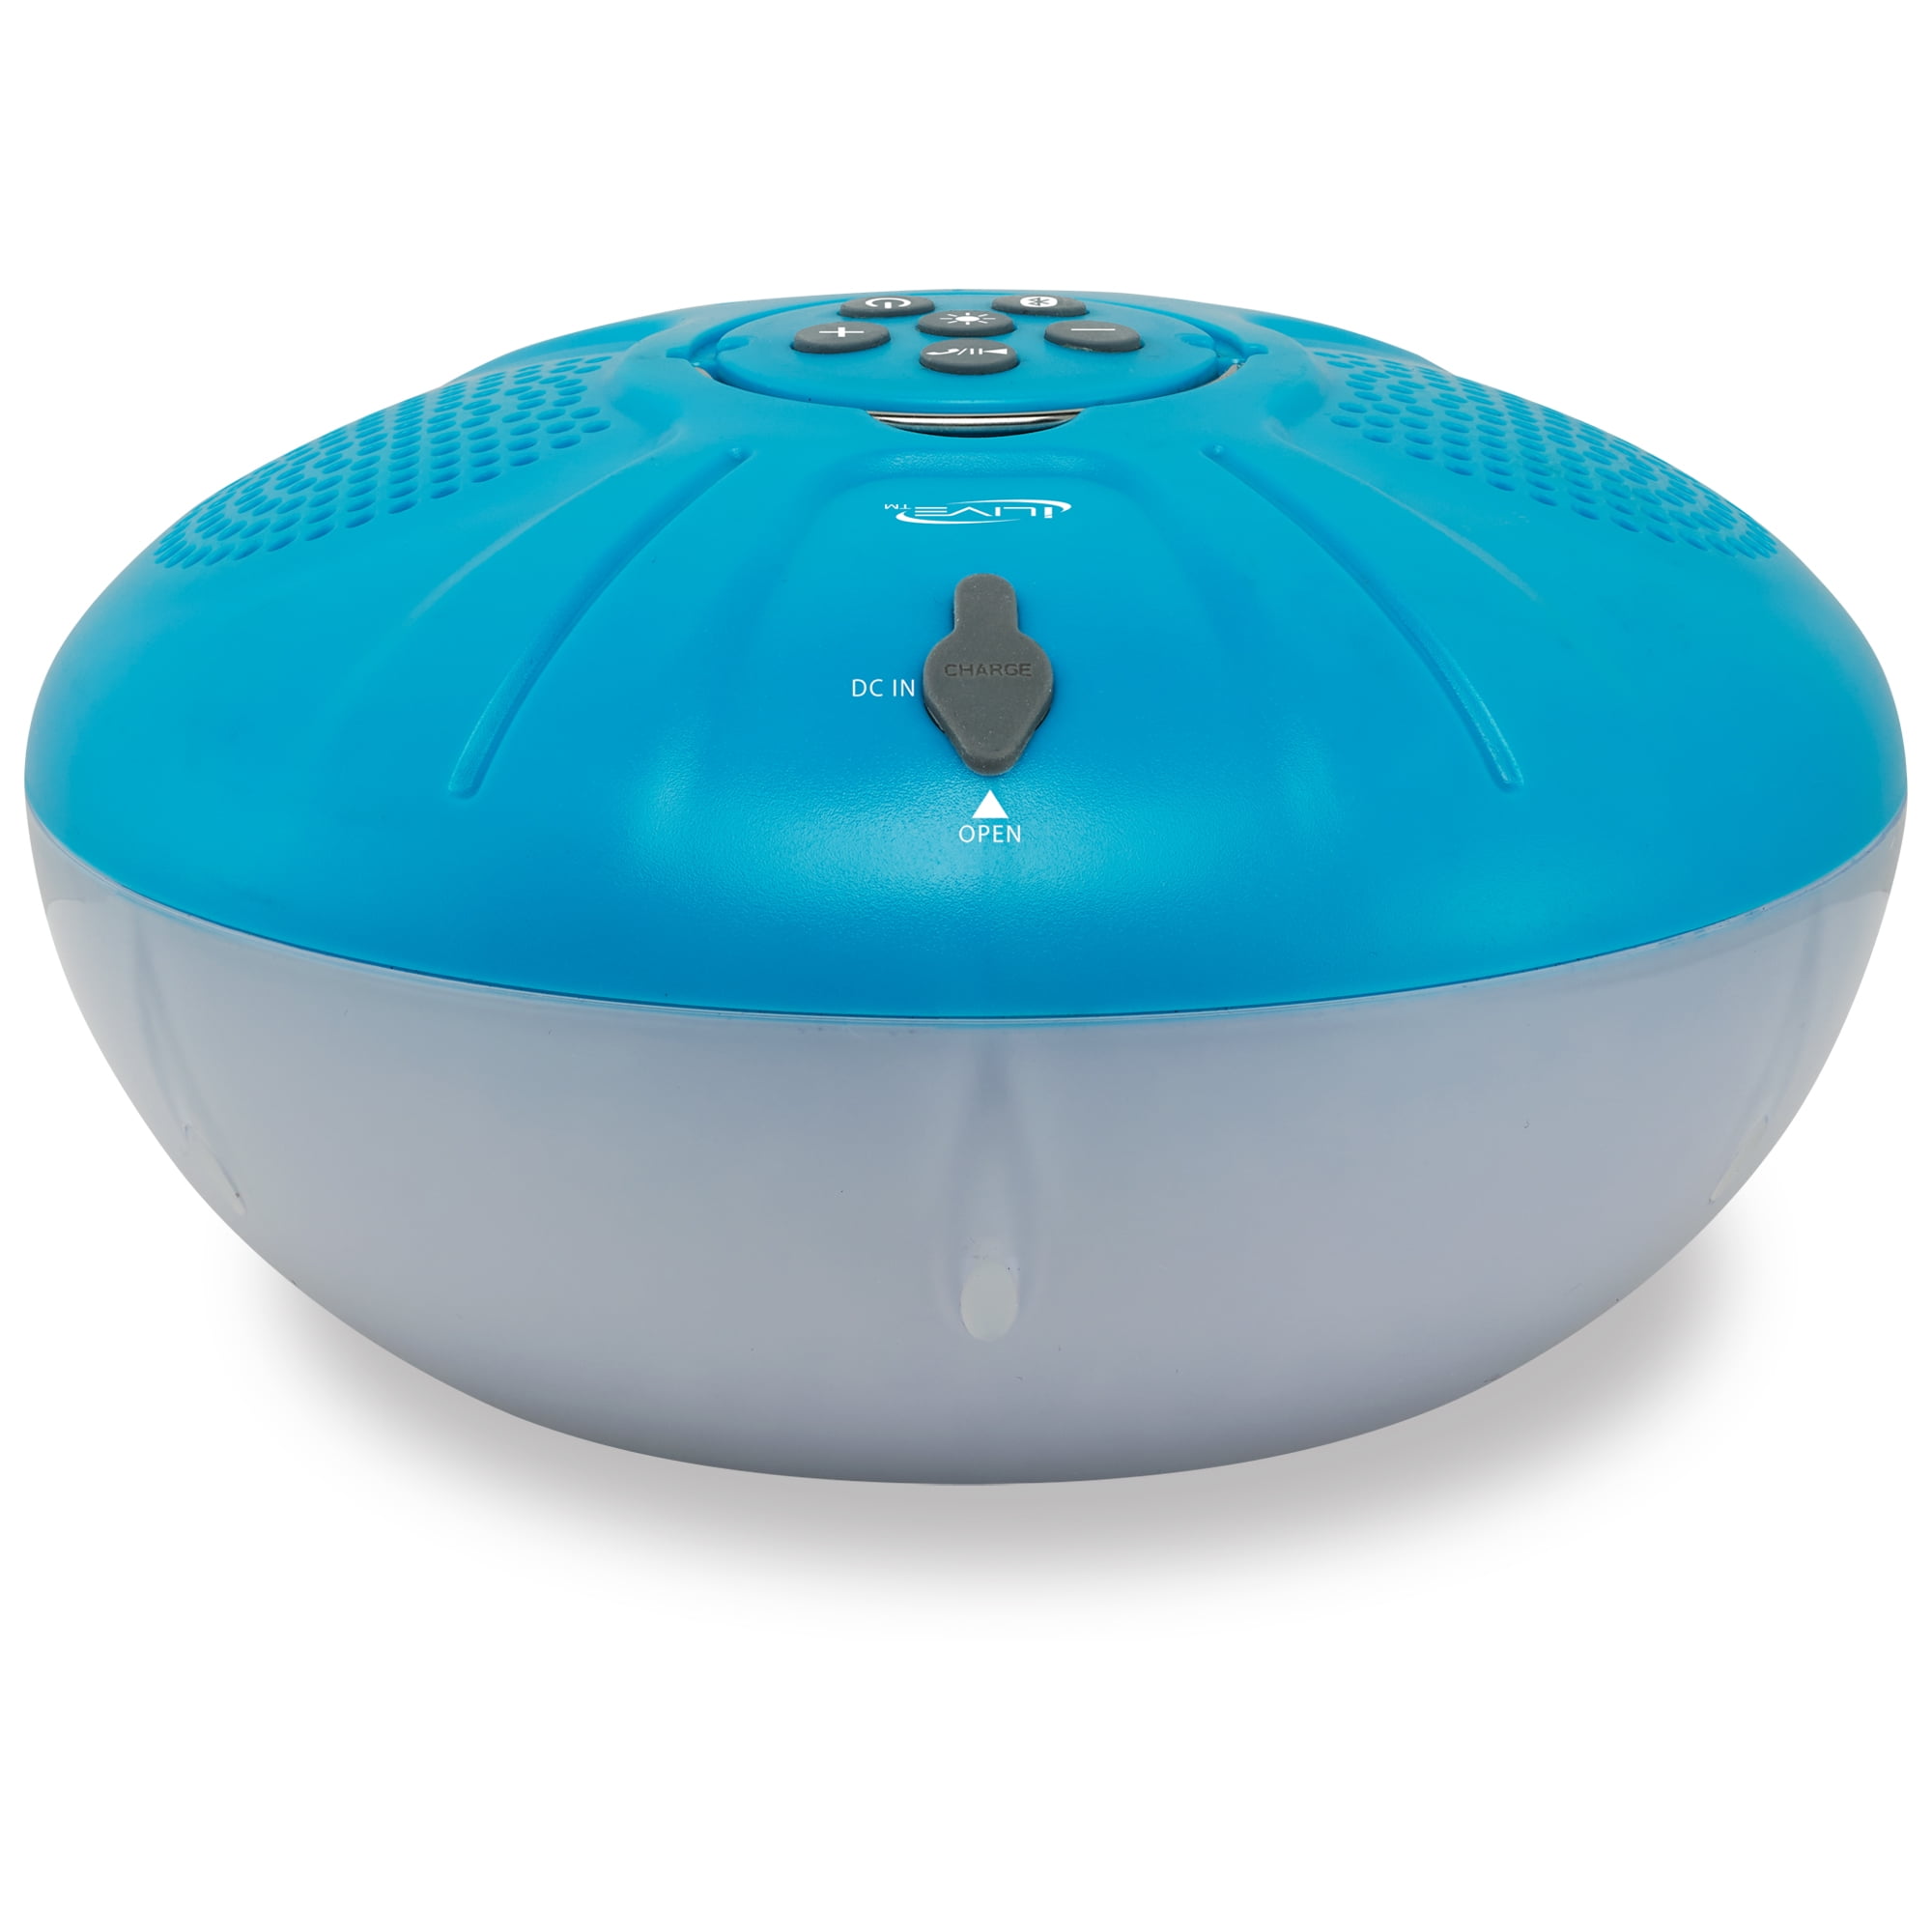 Wireless Bluetooth Weather Resistant Portable Speaker, Blue -  FiveGears, FI2741842